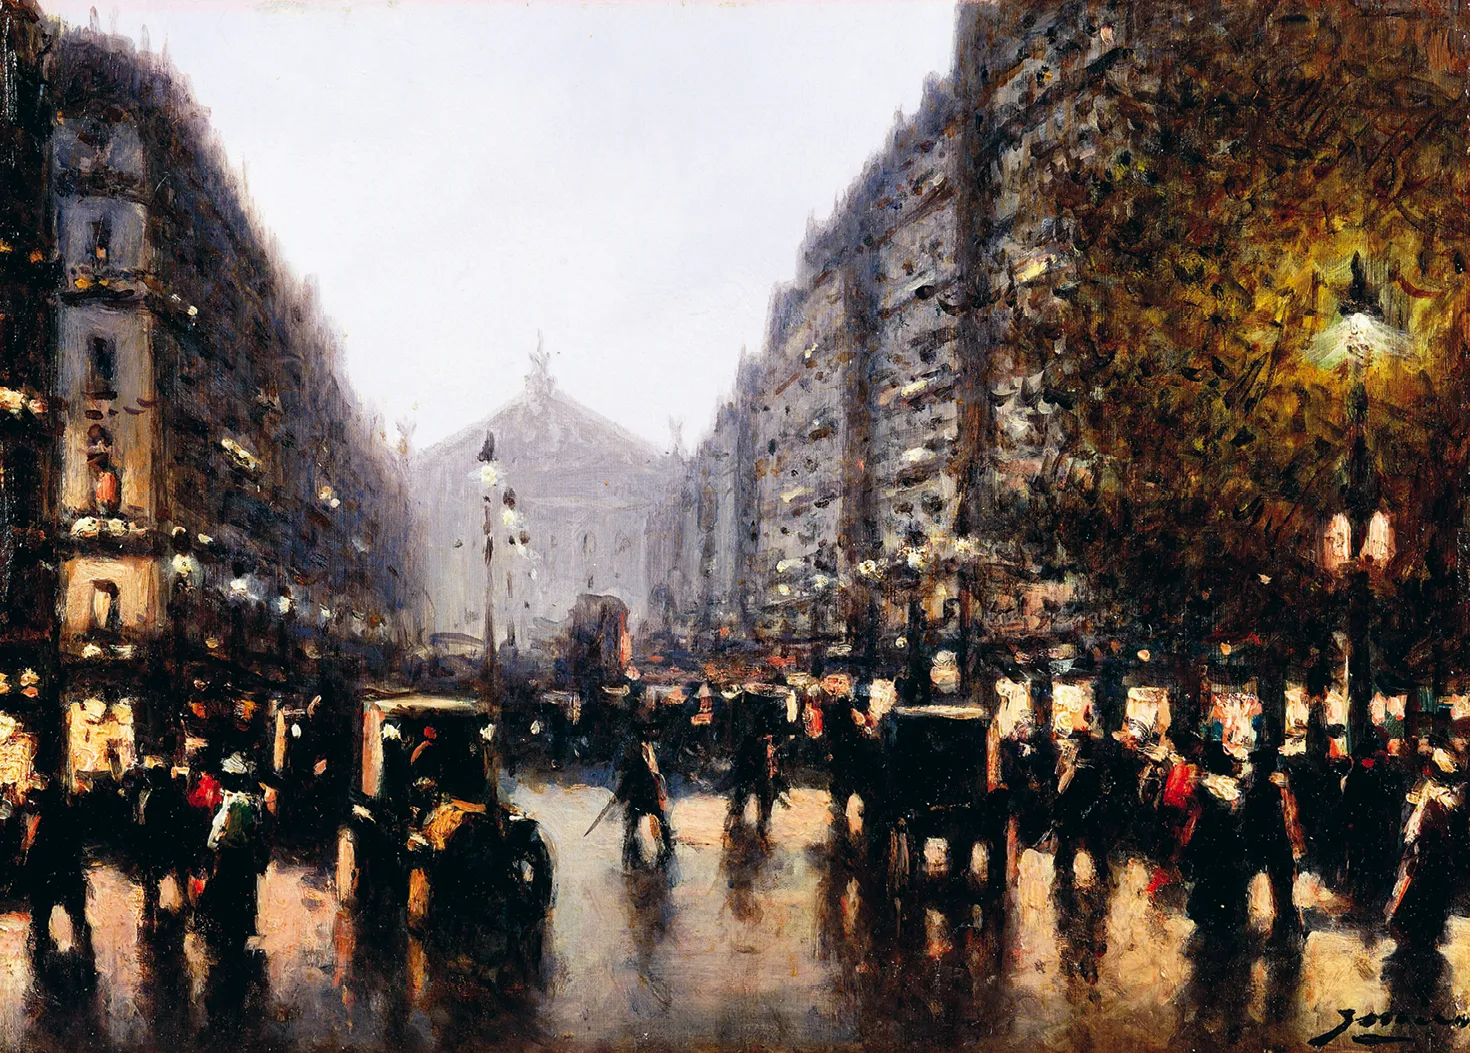 Gaspar Miro Lleo, Scène de rue à Paris, vers 1900, huile sur toile, 24 × 33 cm (collection privée).